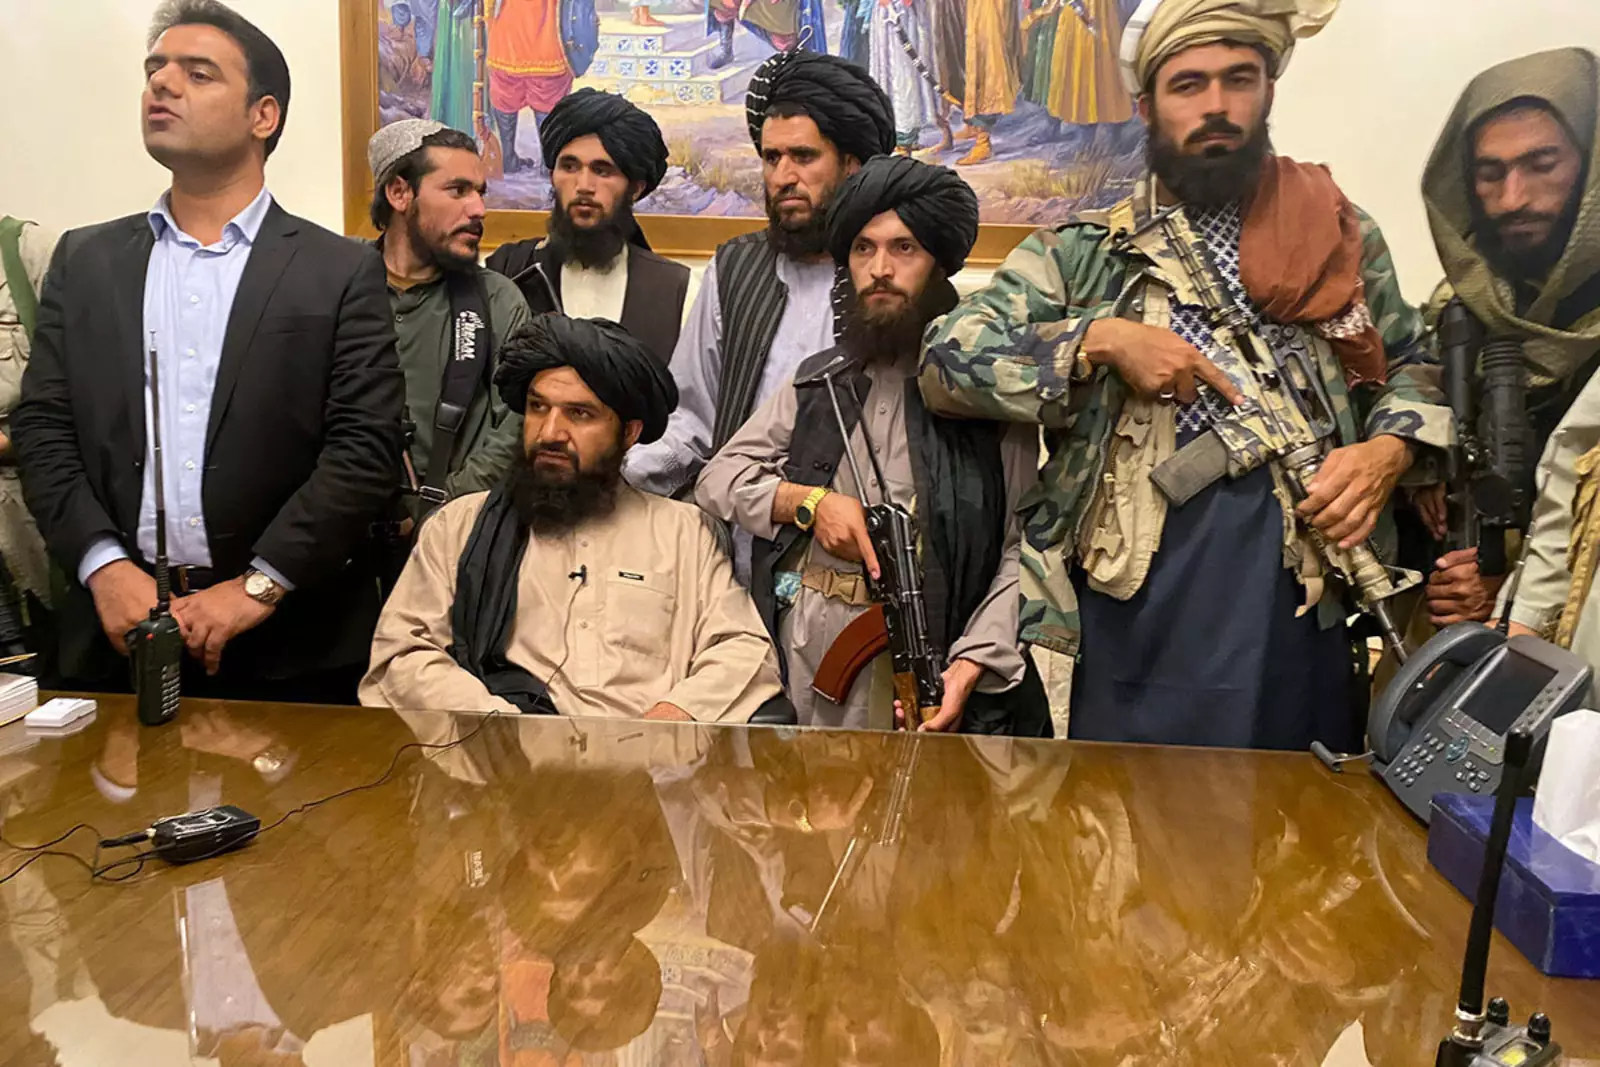  Талибы* в президентском дворце в Кабуле. 